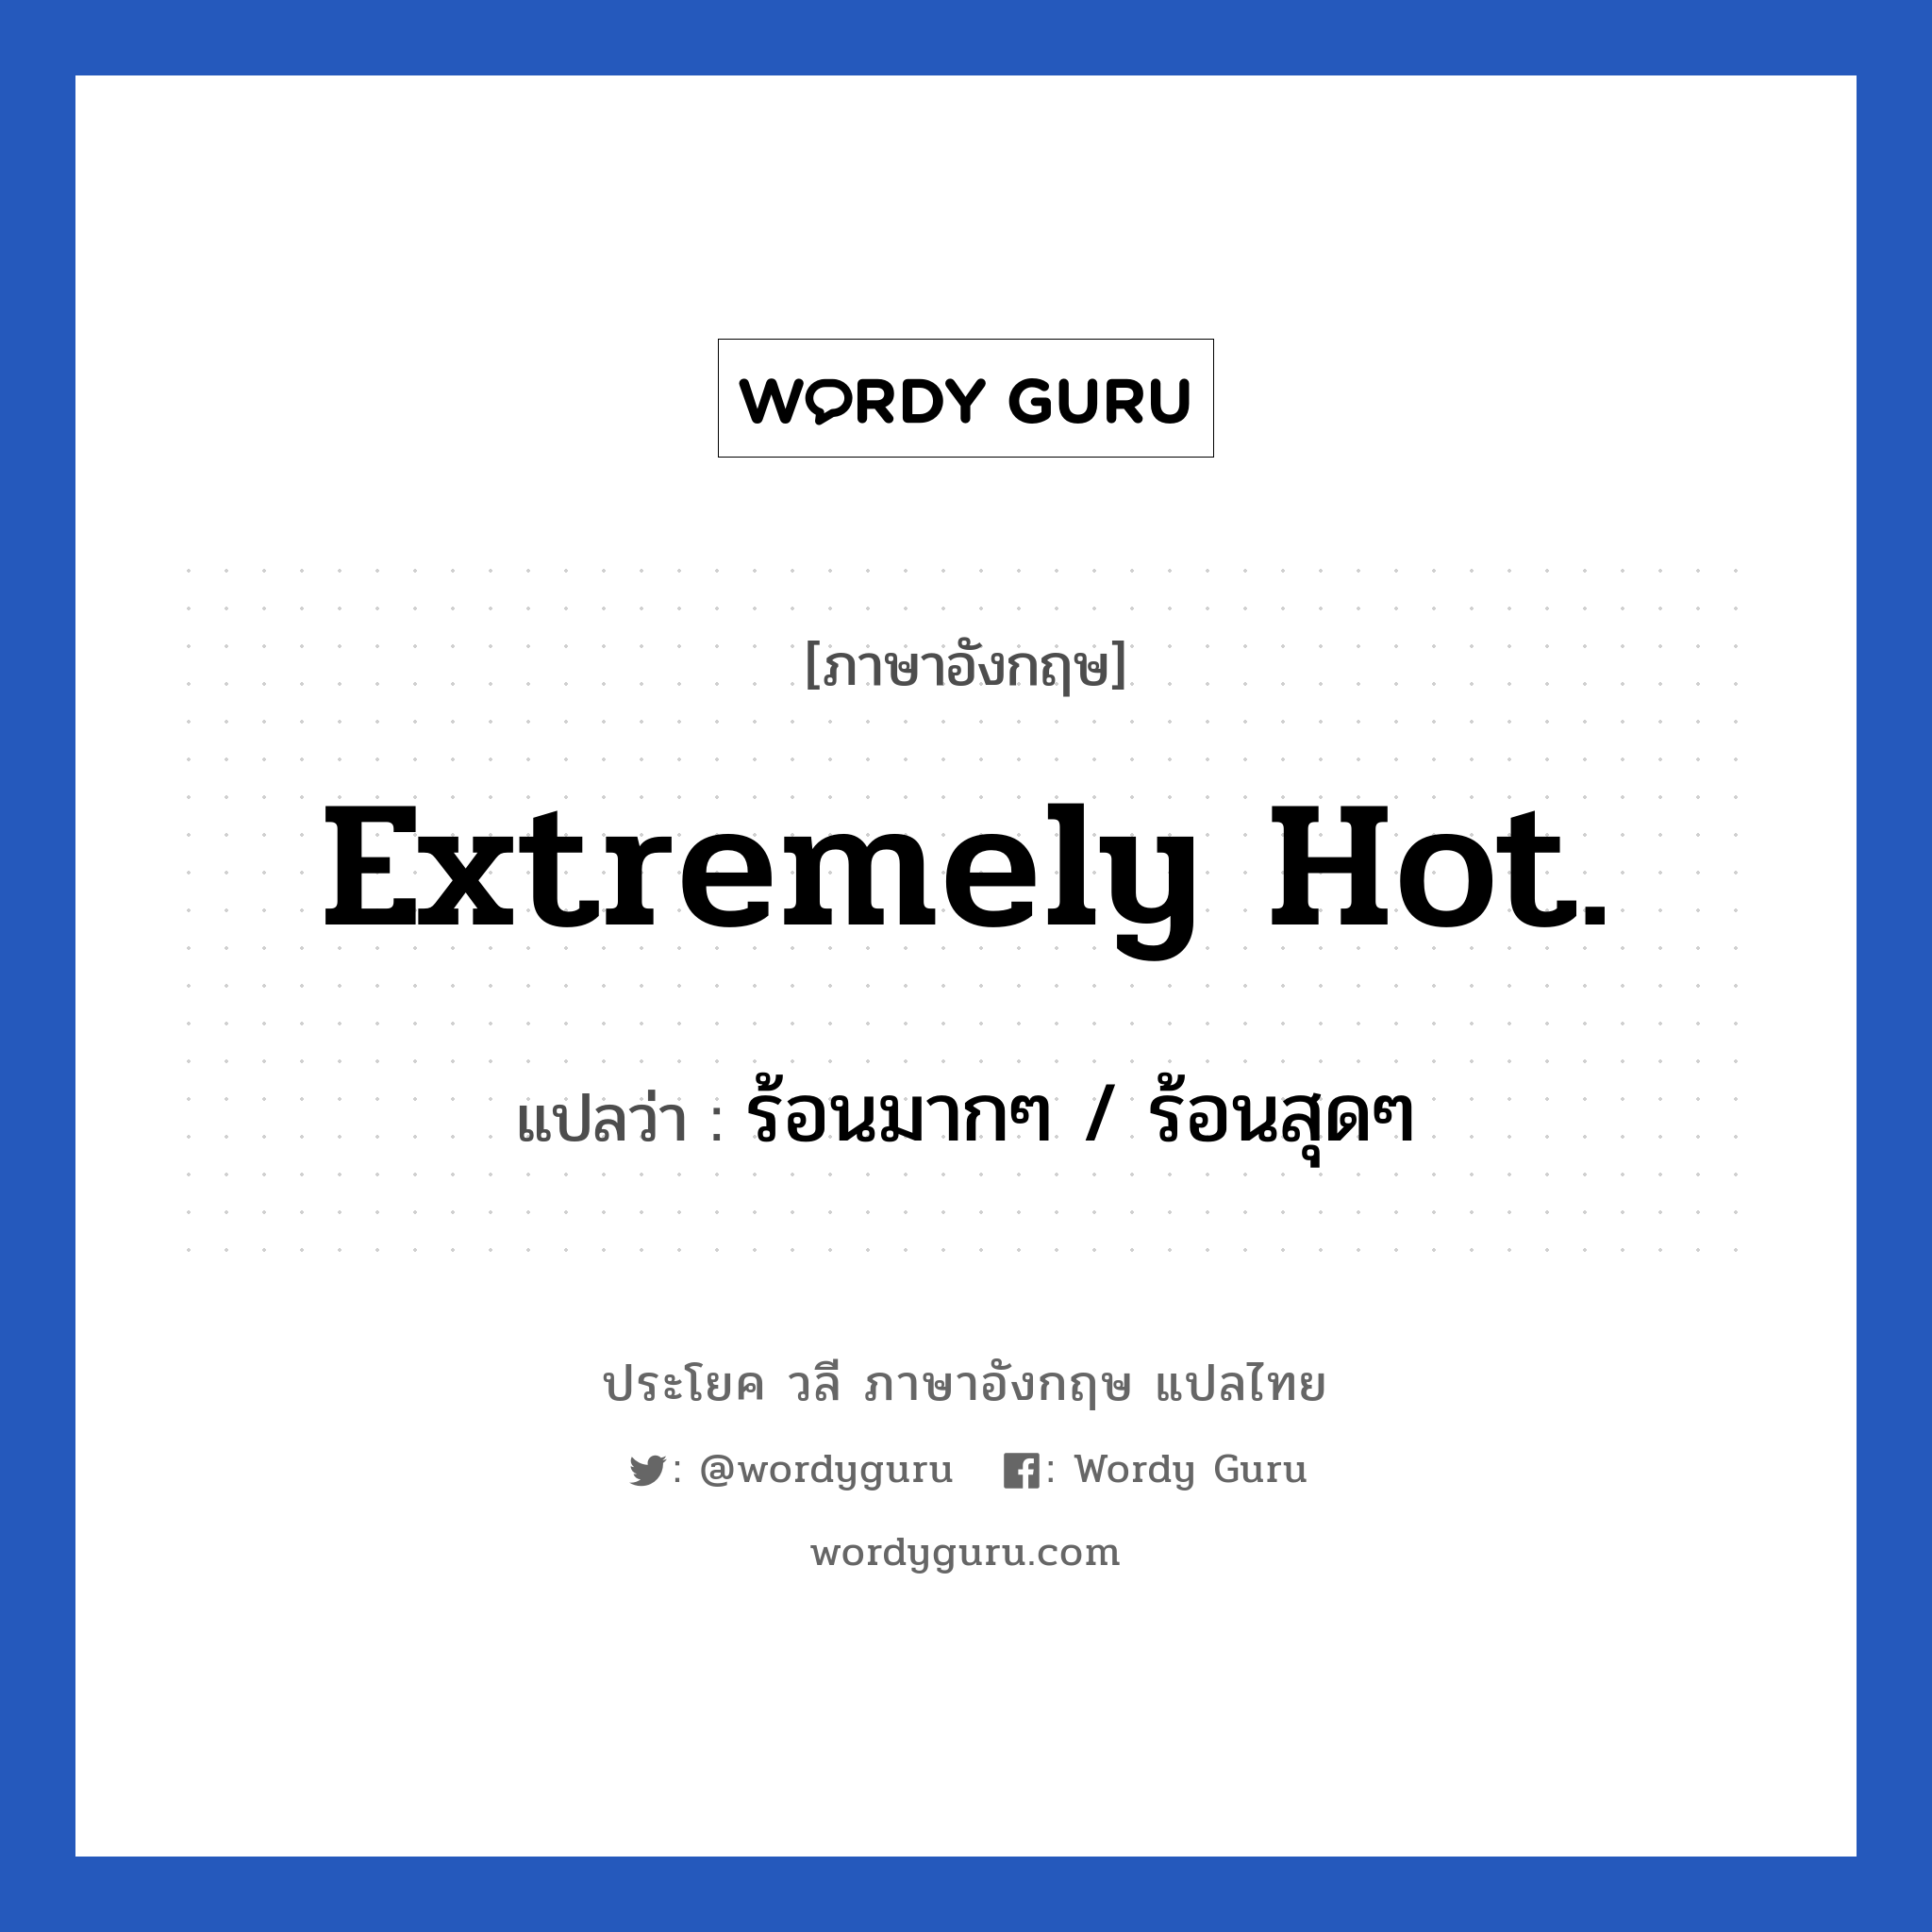 ร้อนมากๆ / ร้อนสุดๆ ภาษาอังกฤษ?, วลีภาษาอังกฤษ ร้อนมากๆ / ร้อนสุดๆ แปลว่า Extremely hot.